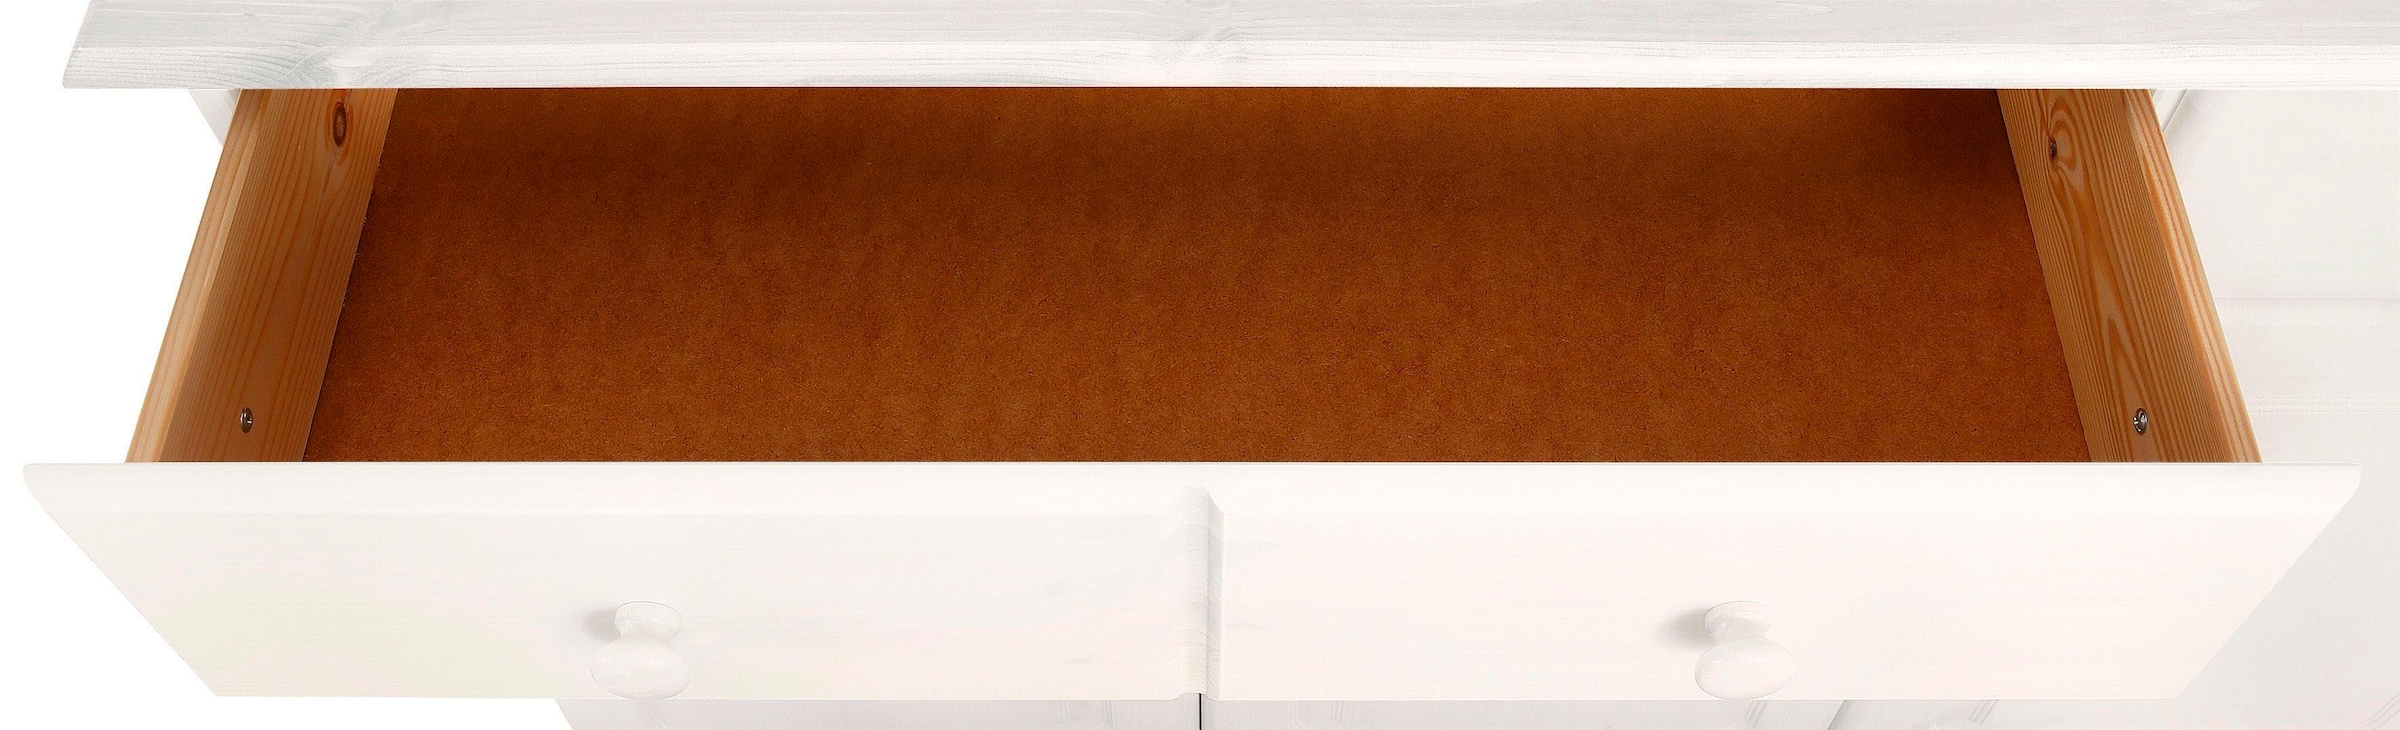 Home affaire Sideboard »Mette«, aus massivem Kiefernholz, in weiteren Farbvarianten, Breite 156 cm